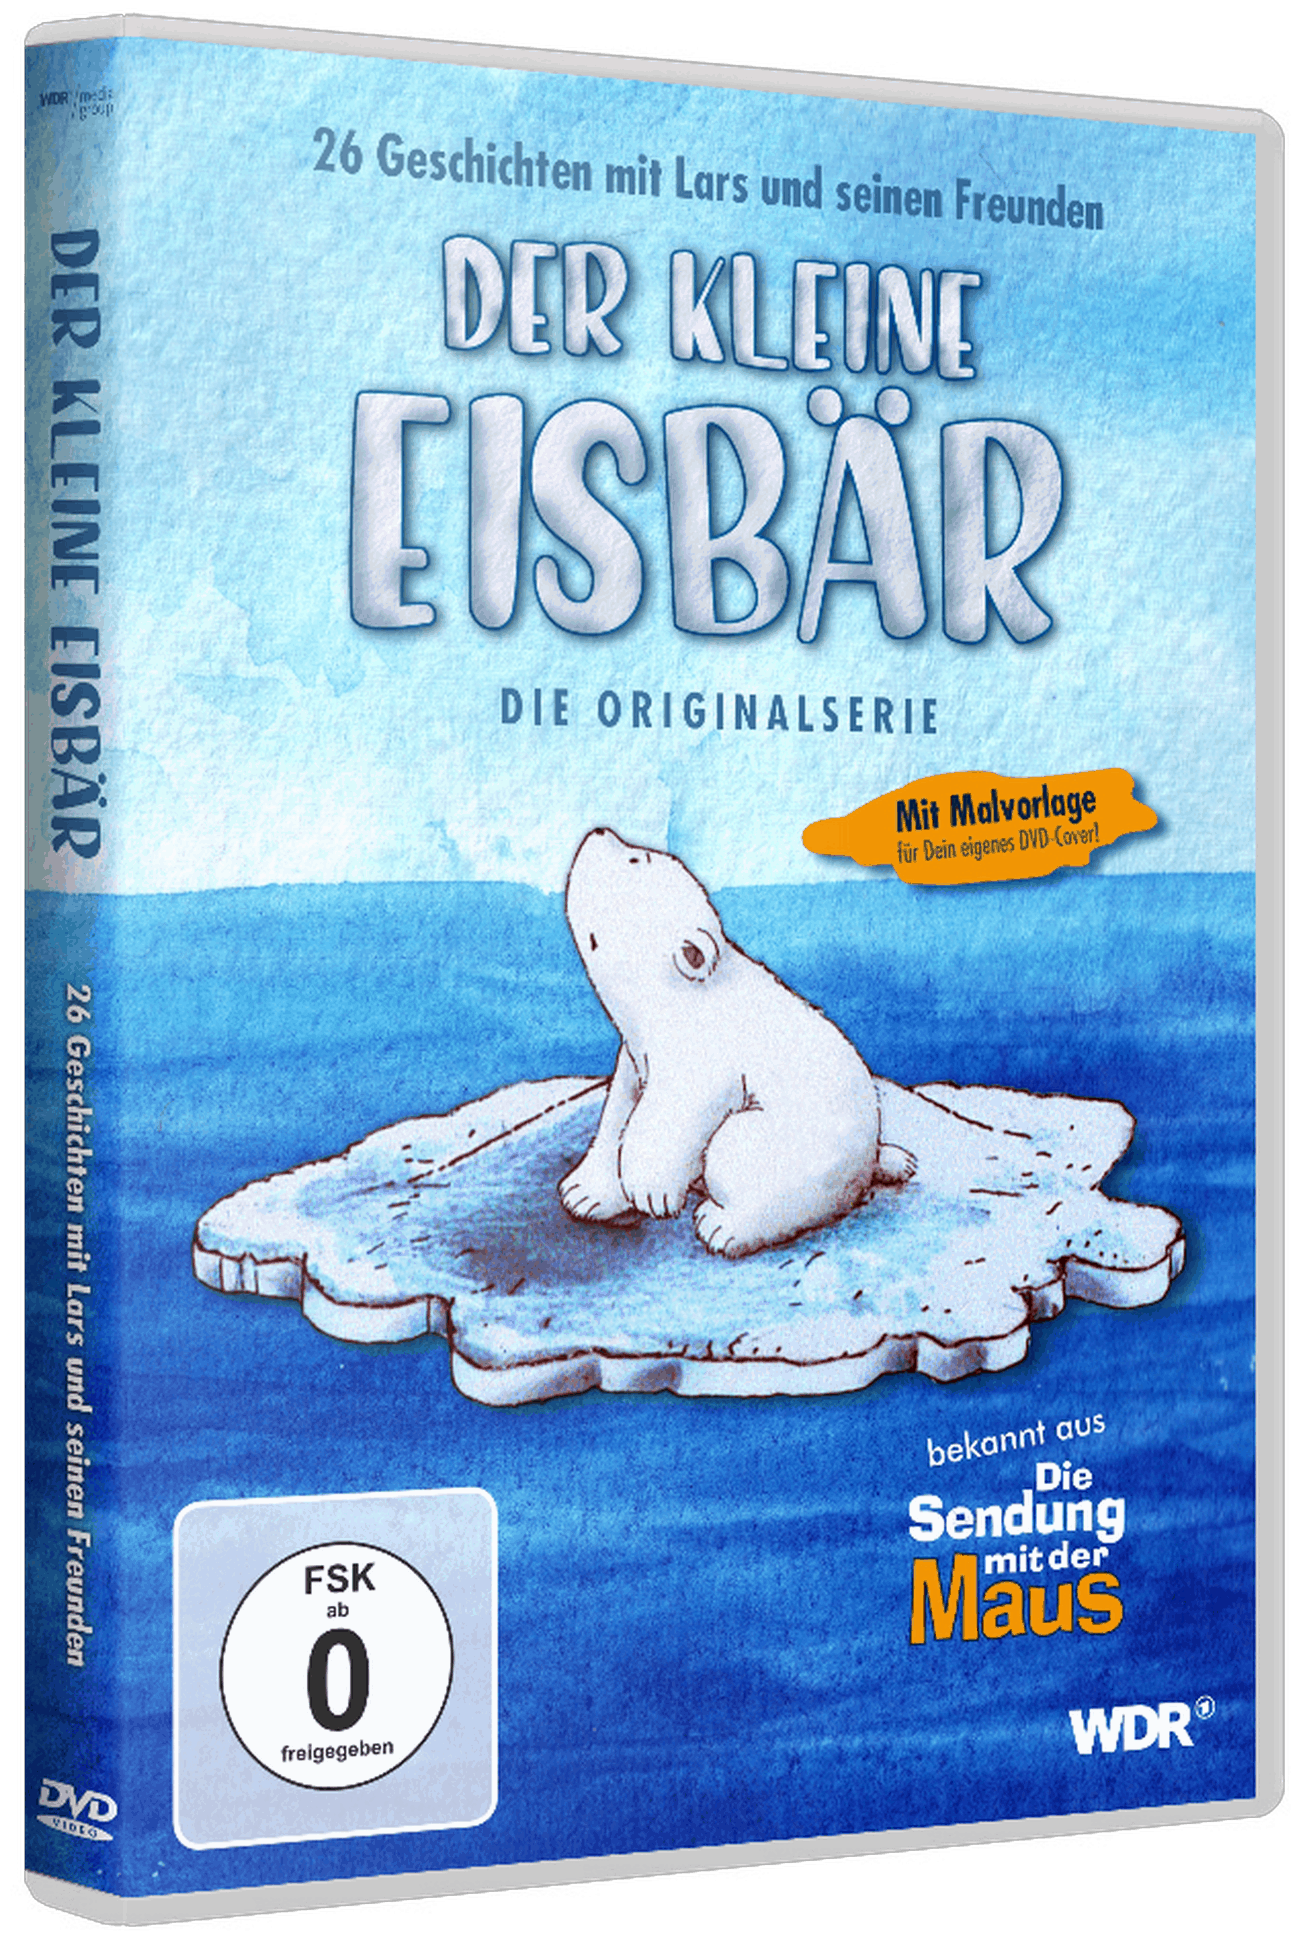 Der kleine Eisbär | Ab 16. Oktober auf DVD